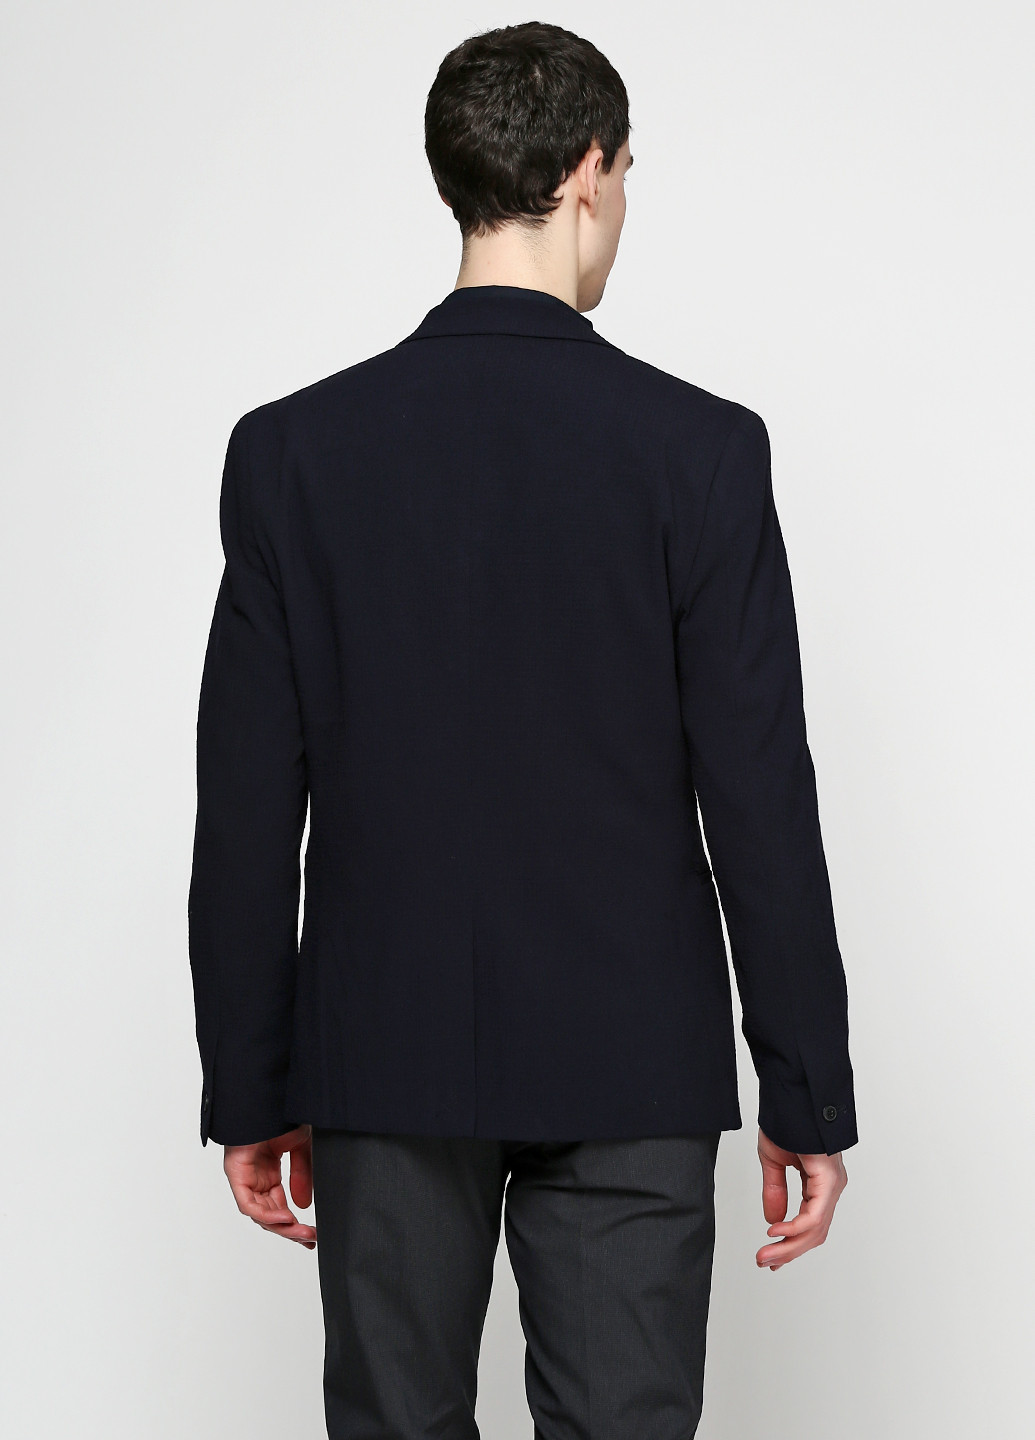 Пиджак H&M однотонный тёмно-синий деловой полиэстер